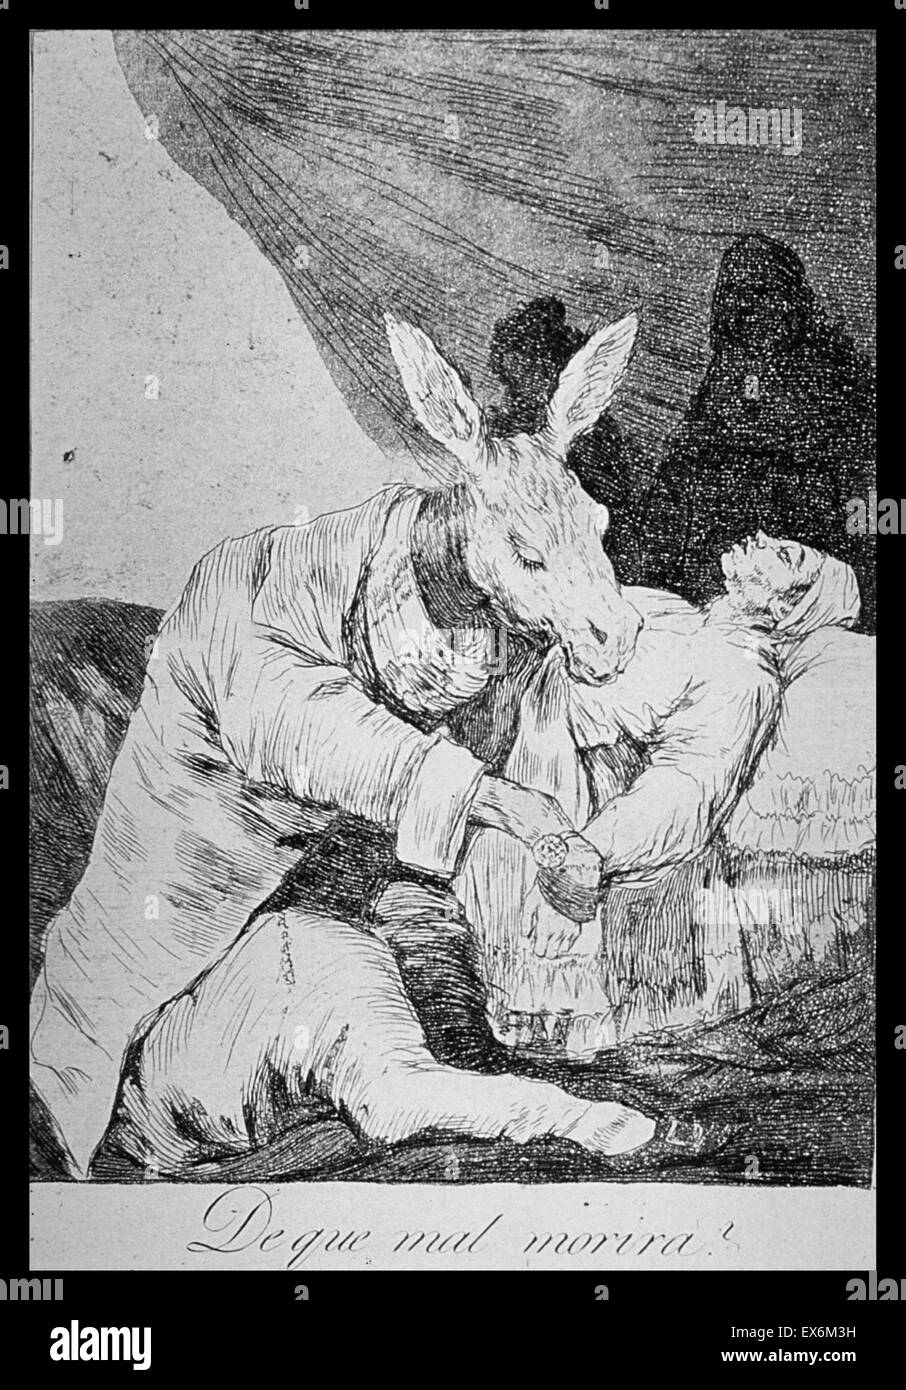 Stampare da Francisco Goya (1746-1828) Spagnolo romantico pittore e incisore considerata sia come l'ultimo dei vecchi maestri e il primo dei rinoceronti. Datato 1780 Foto Stock